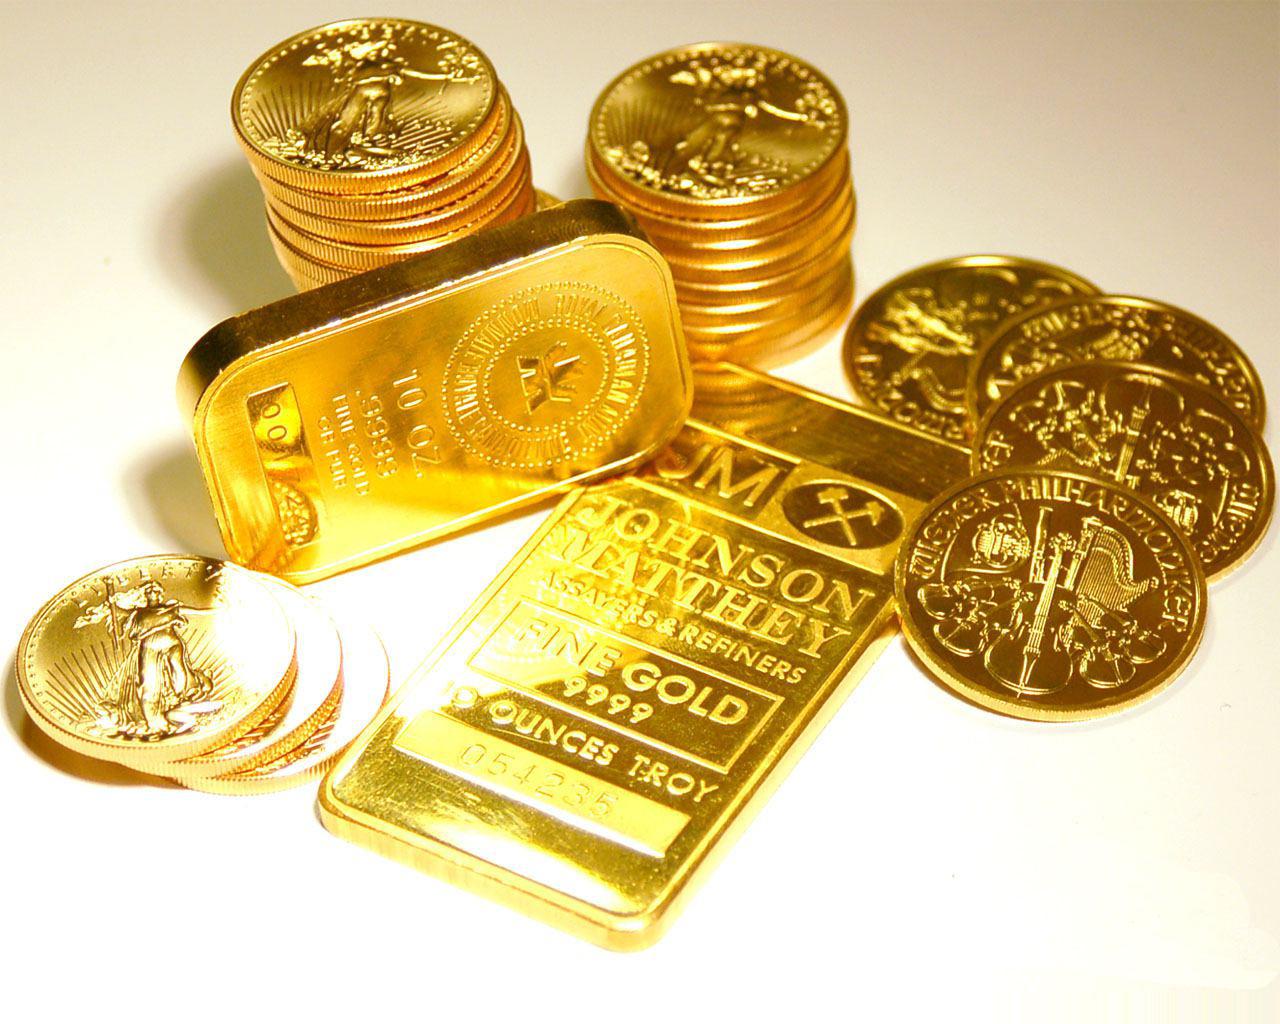 قیمت امروز سکه و طلا در بازارهای استان